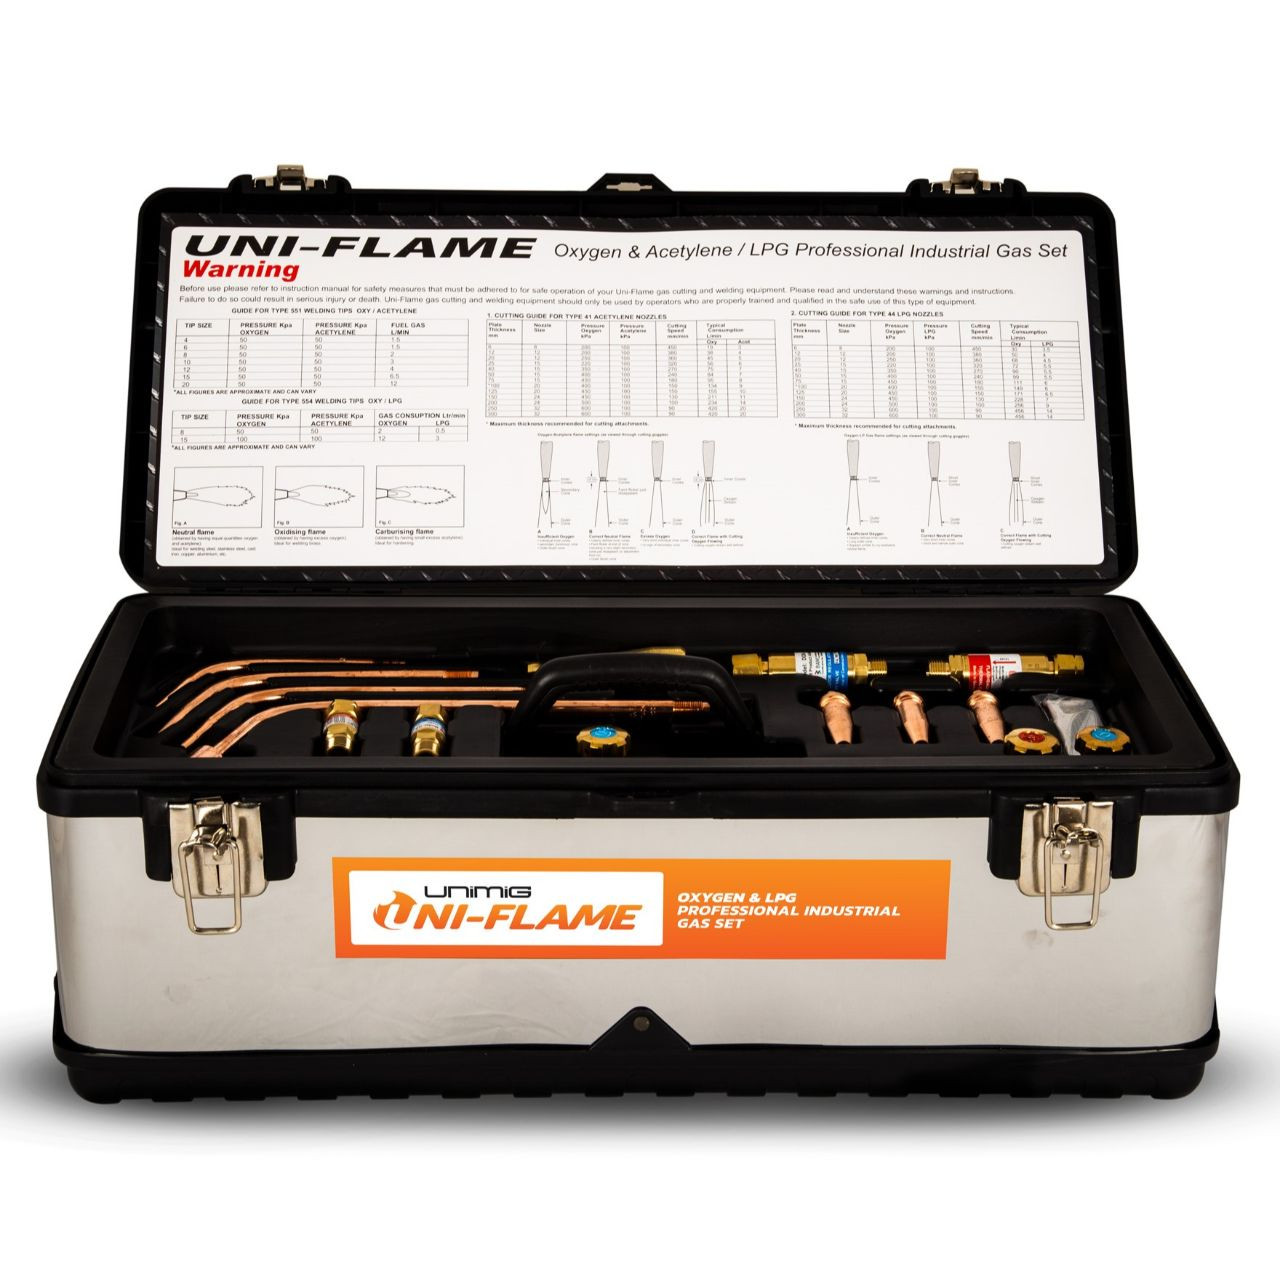 Uniflame Oxy/LPG Kit in Toolbox